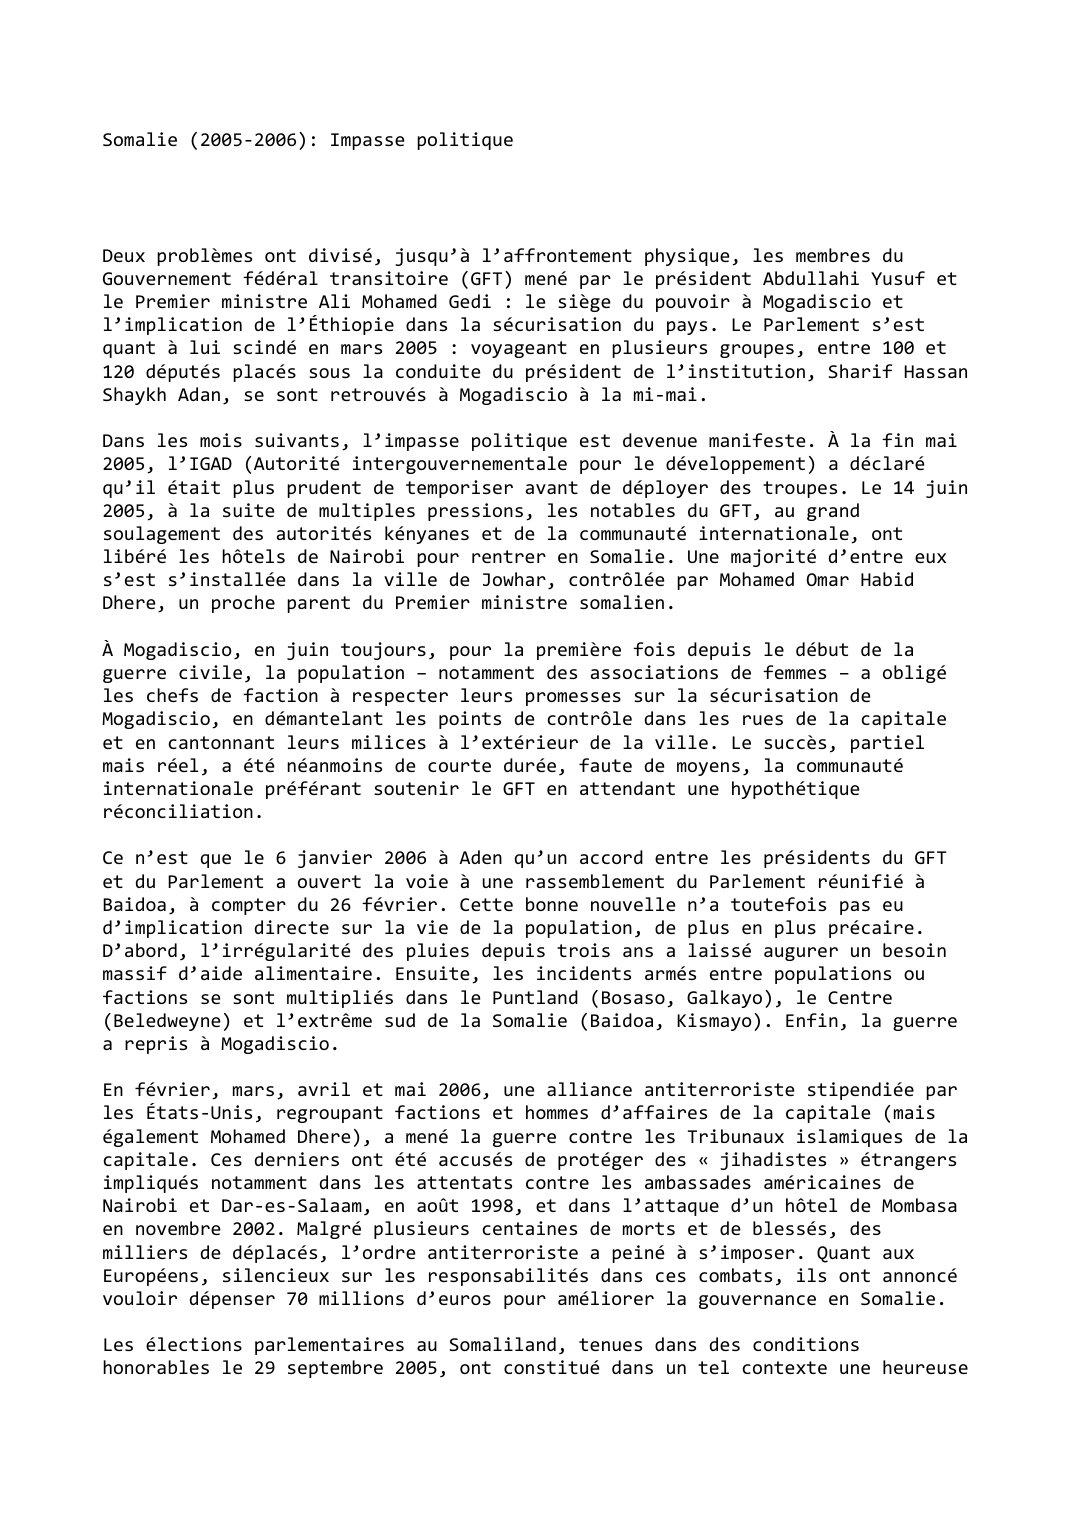 Prévisualisation du document Somalie (2005-2006): Impasse politique